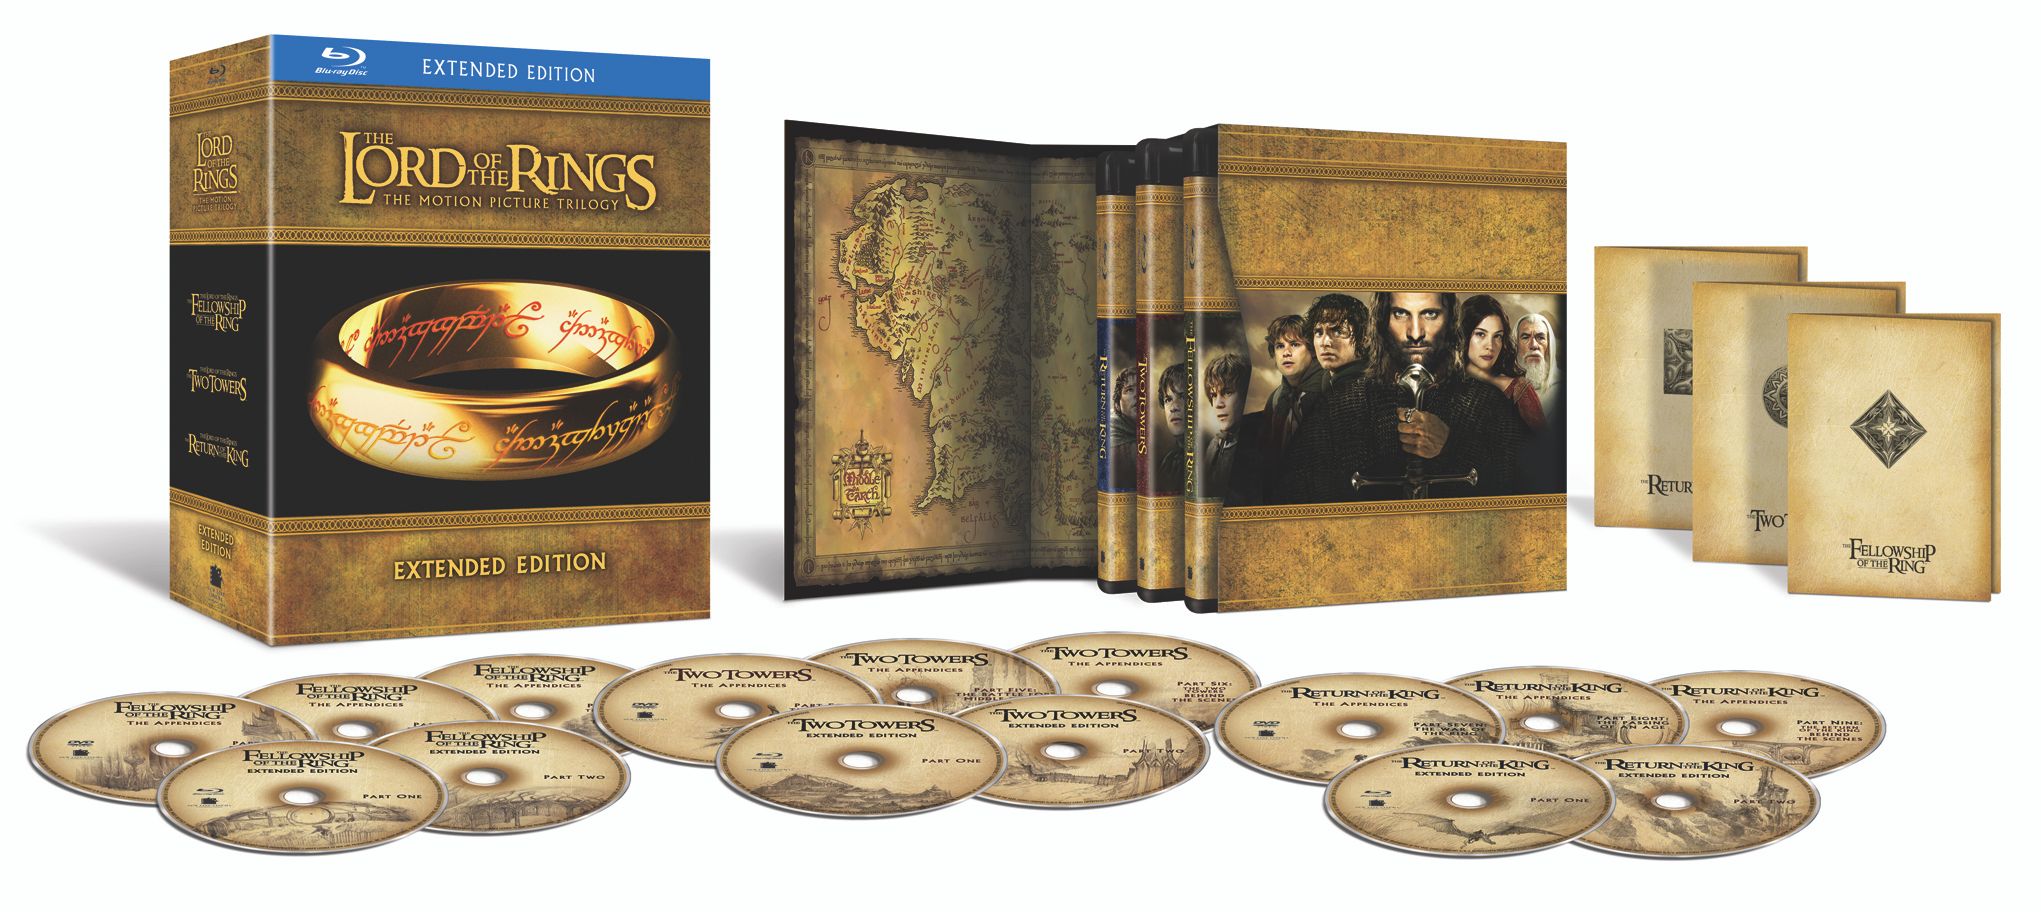 반지의 제왕 트릴로지 확장판 (The Lord of the Rings Trilogy Extended Edition, 2001-2003)